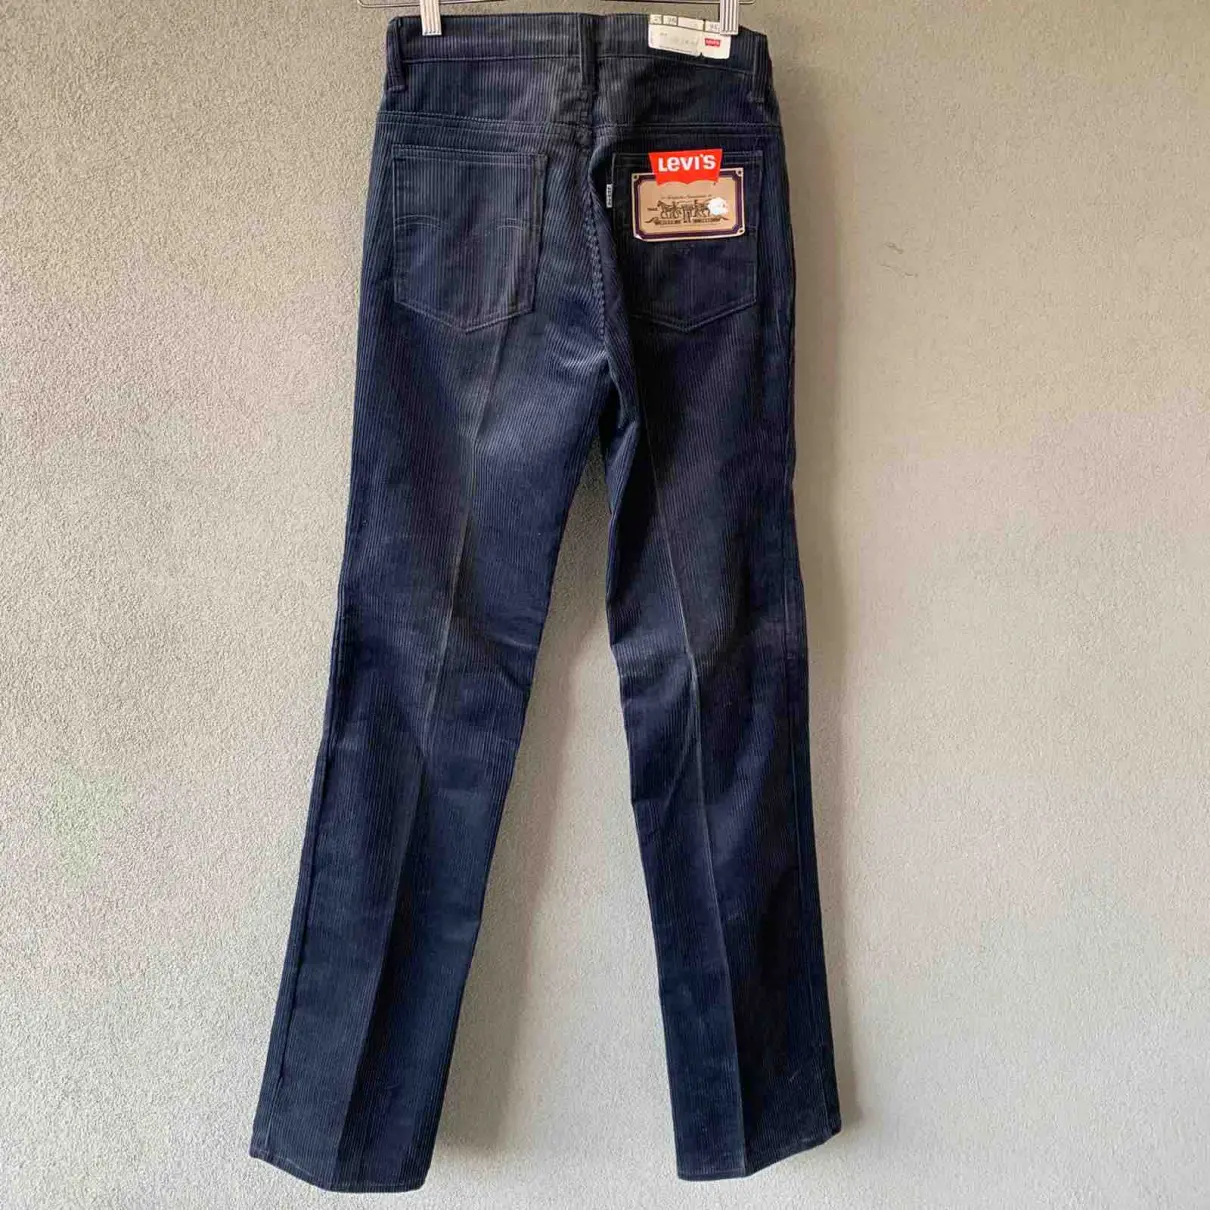 Buy Levi's Anthracite Cotton Jeans online - Vintage